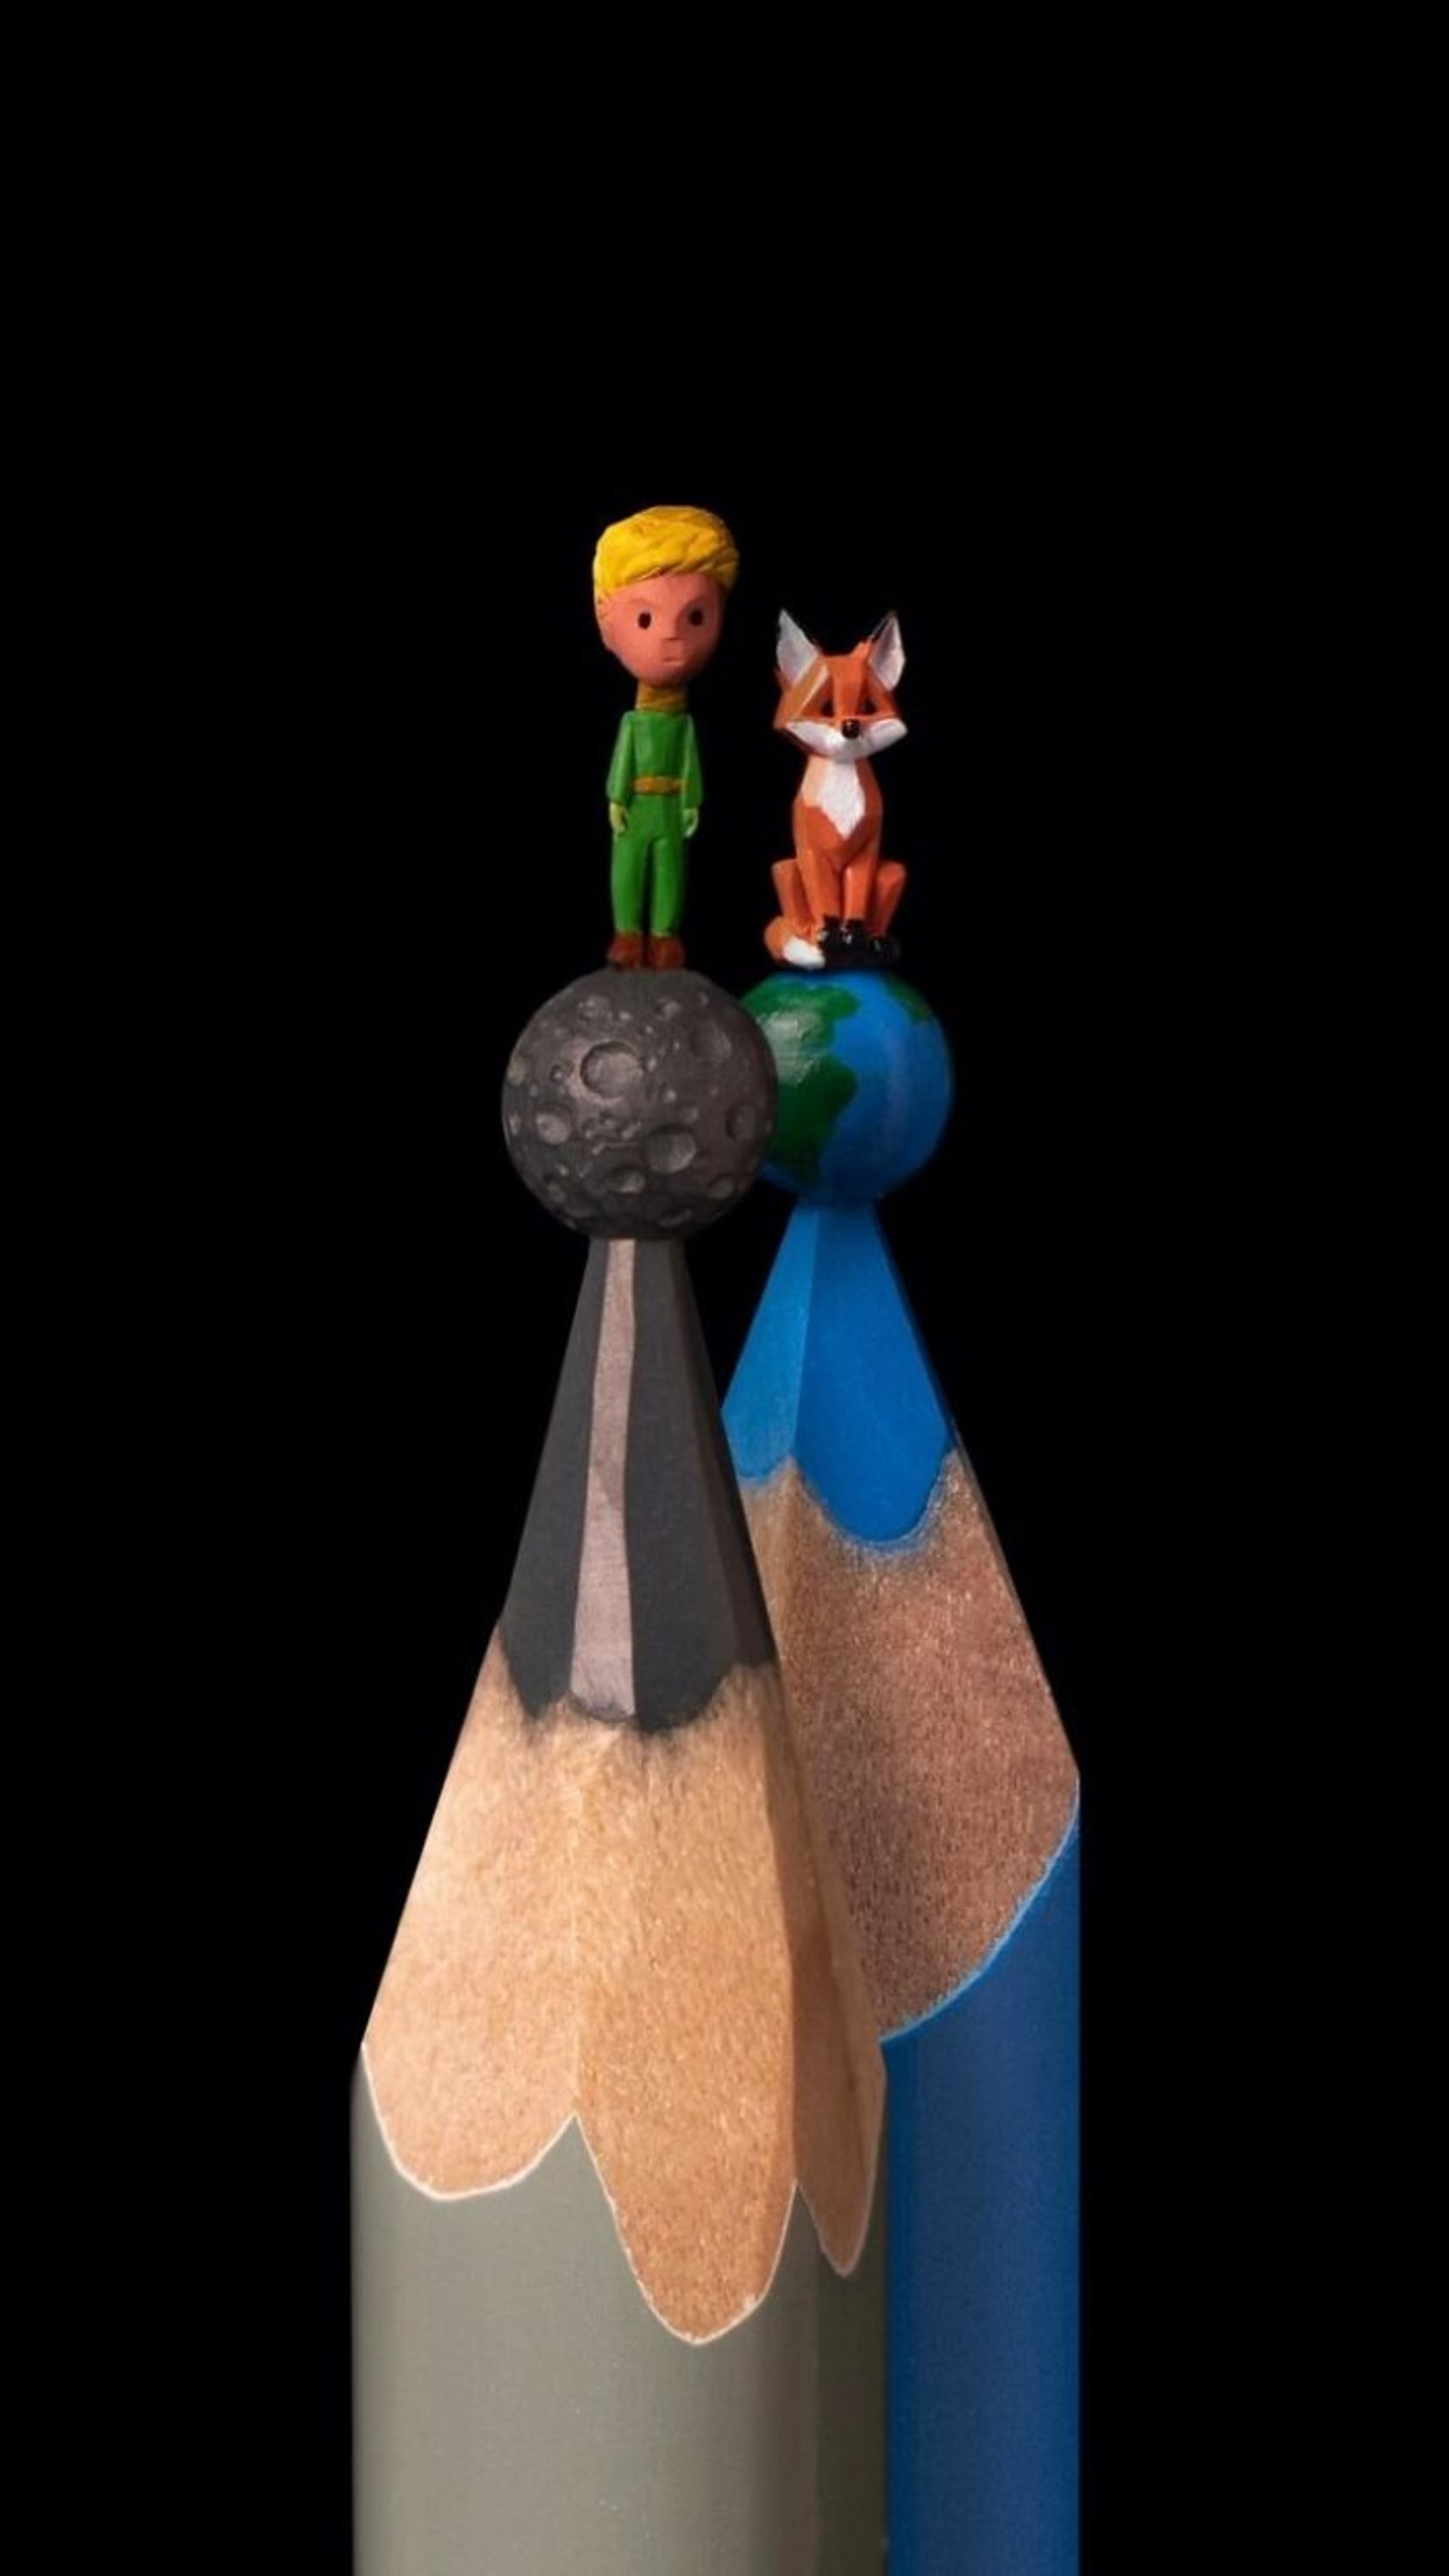 tip-of-pencil-miniature-sculptures-1-661ee7a5a55162c757fc5957